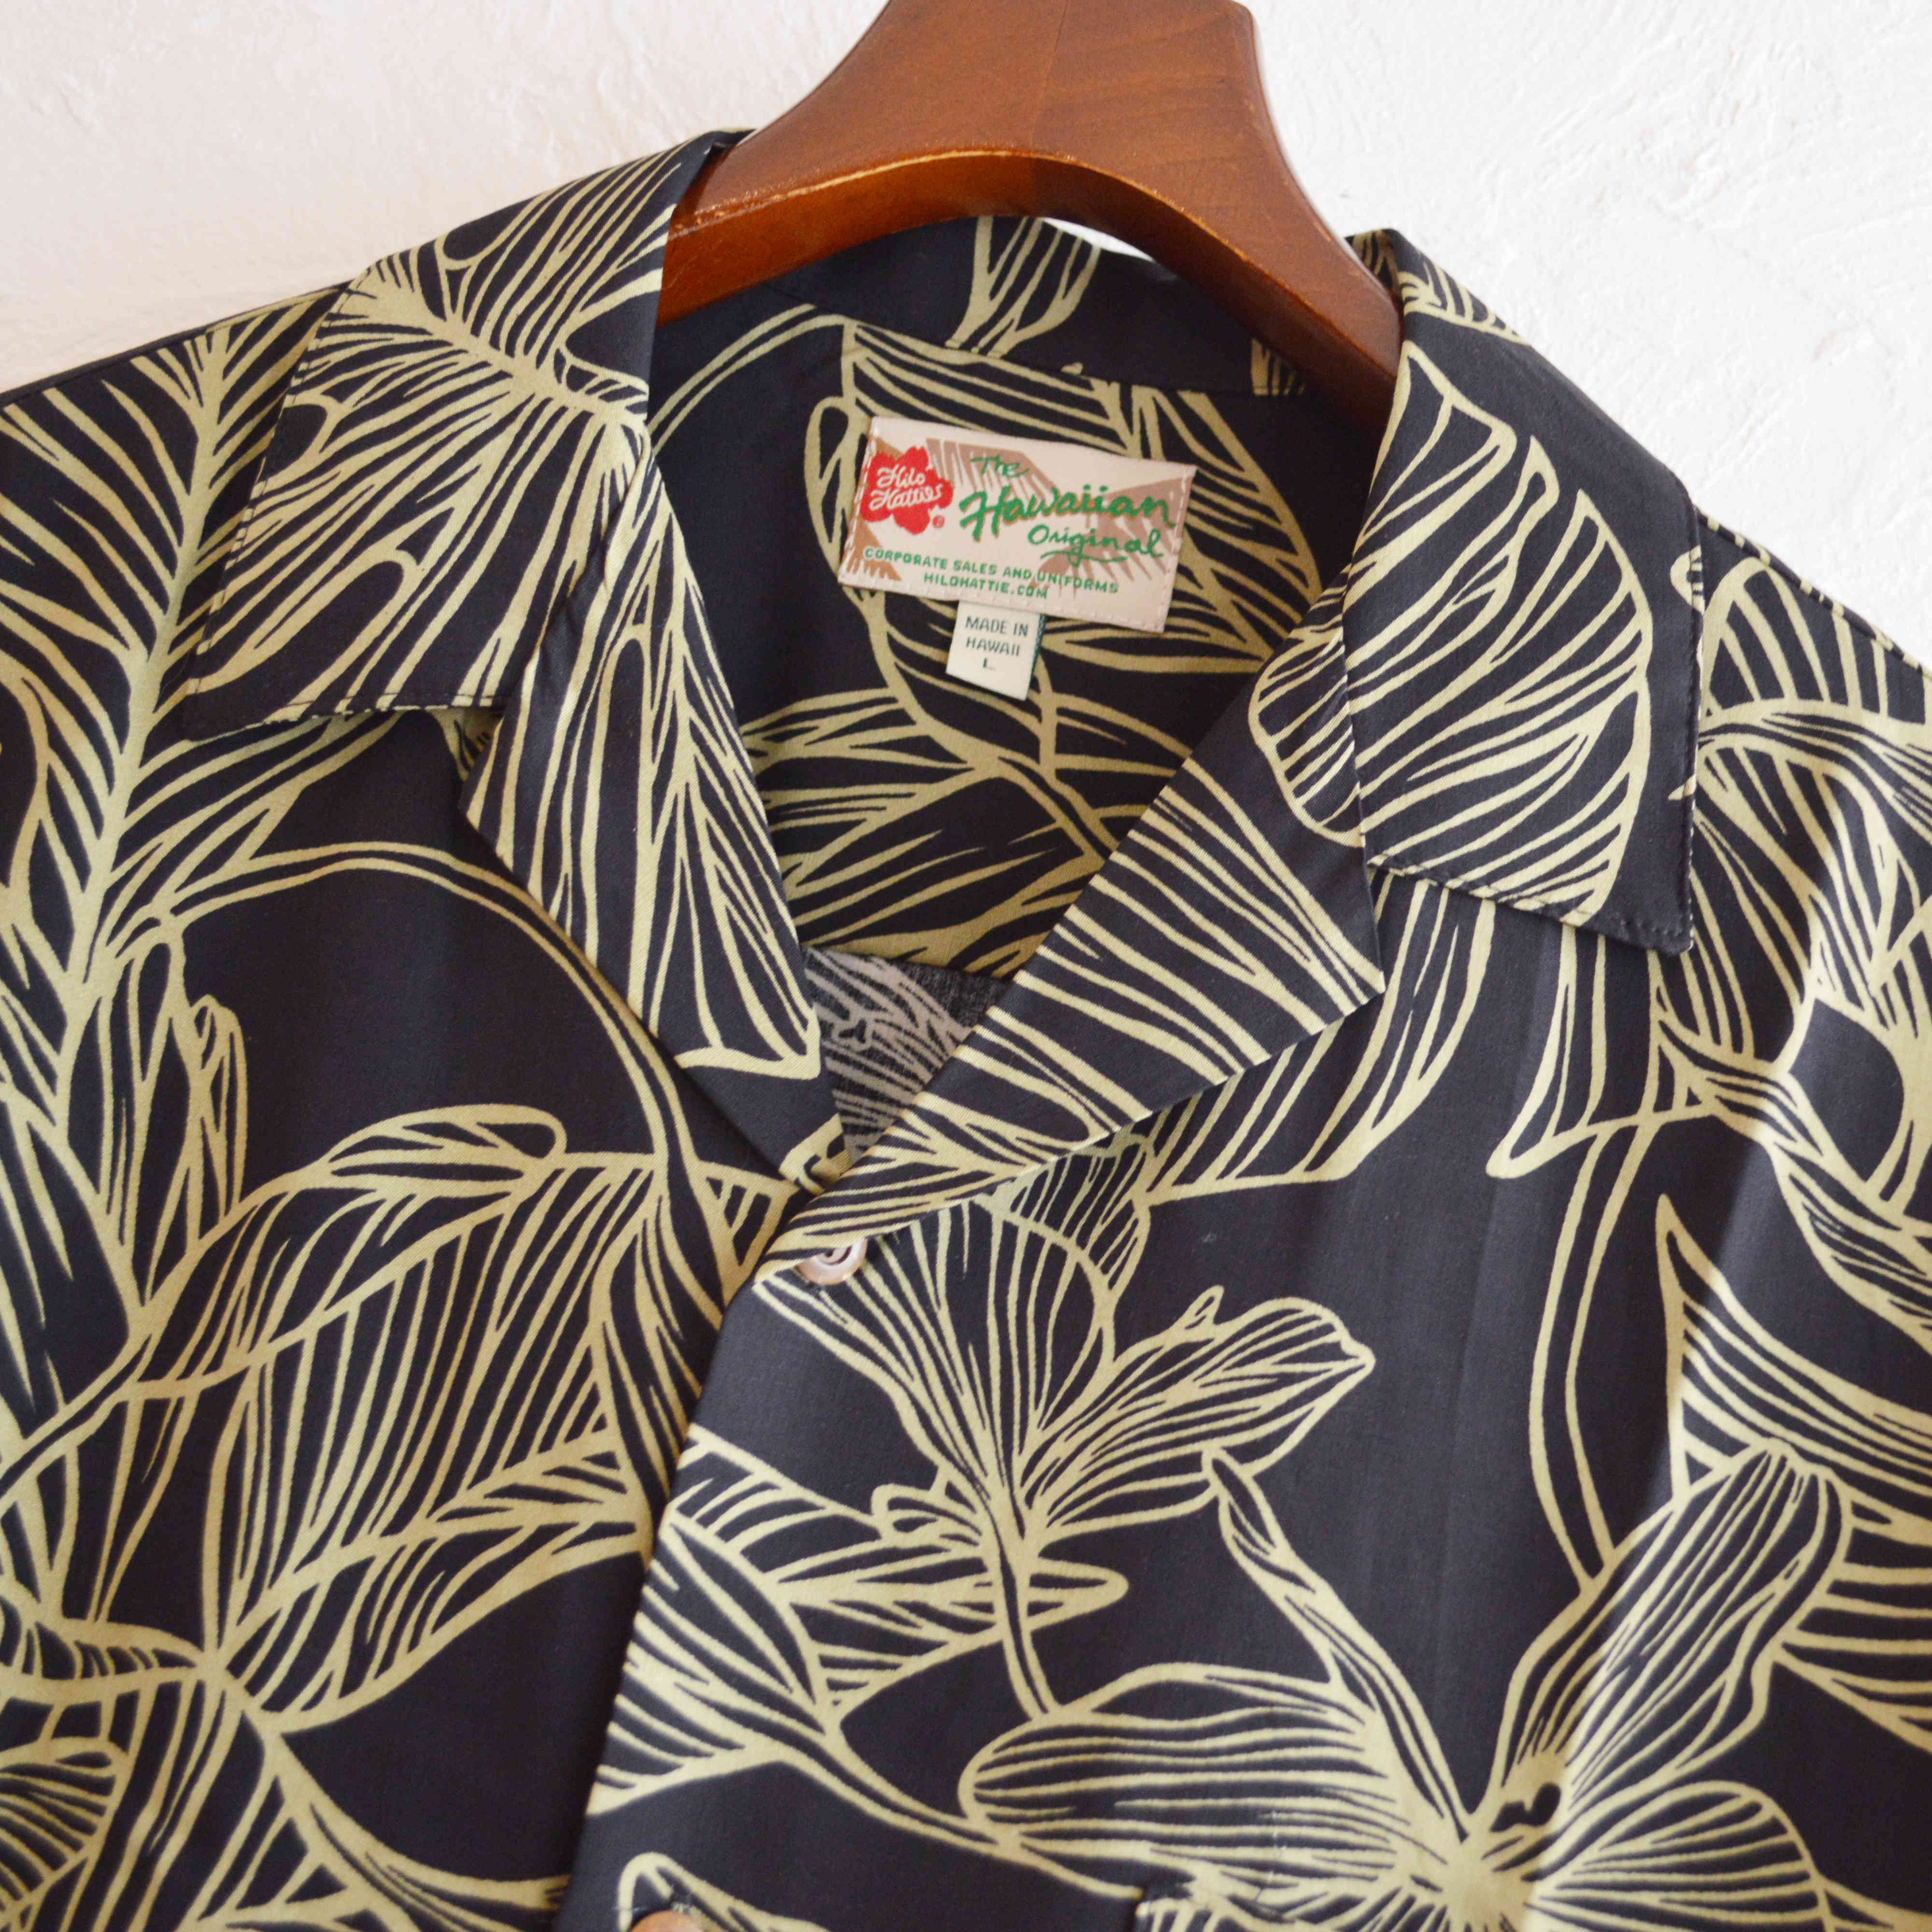 Hilo Hattie / Rayon Aloha Shirt (BLACK)